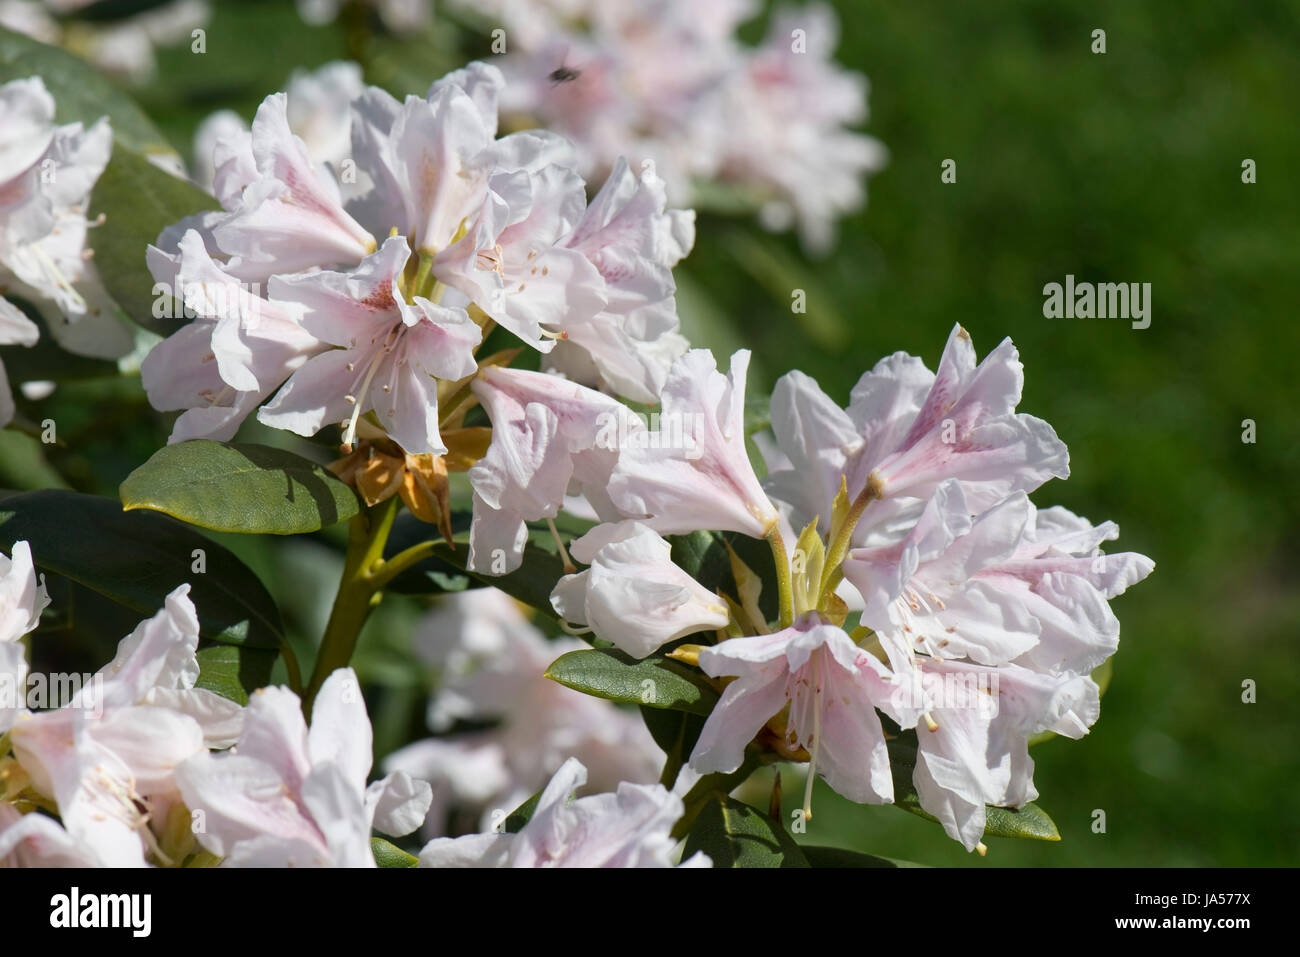 Les fleurs et les feuilles de Rhododendron 'Cunningham' Blanc, légère fleurs roses sur ce flowerinf printemps éricacée arbustive, Berkshire, Avril Banque D'Images